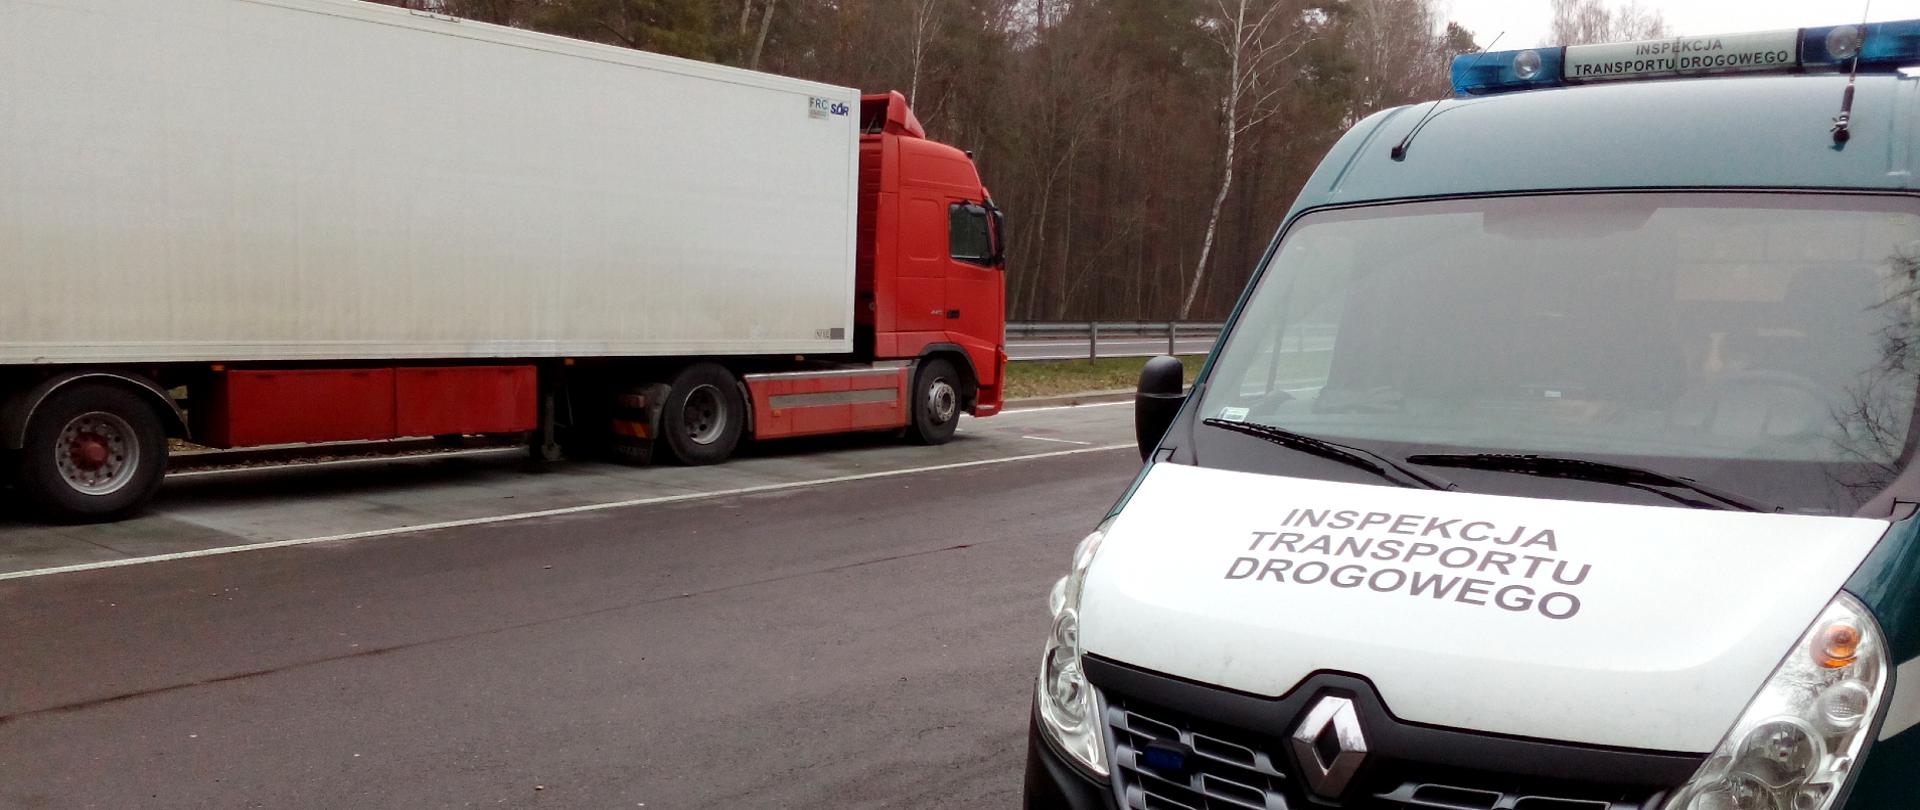 Inspektorzy z WITD w Lublinie na DK19 sprawdzali stanu techniczny pojazdów. W jednym z przypadków zatrzymano dwa dowody rejestracyjne i zabroniono dalszej jazdy do czasu wykonania naprawy.